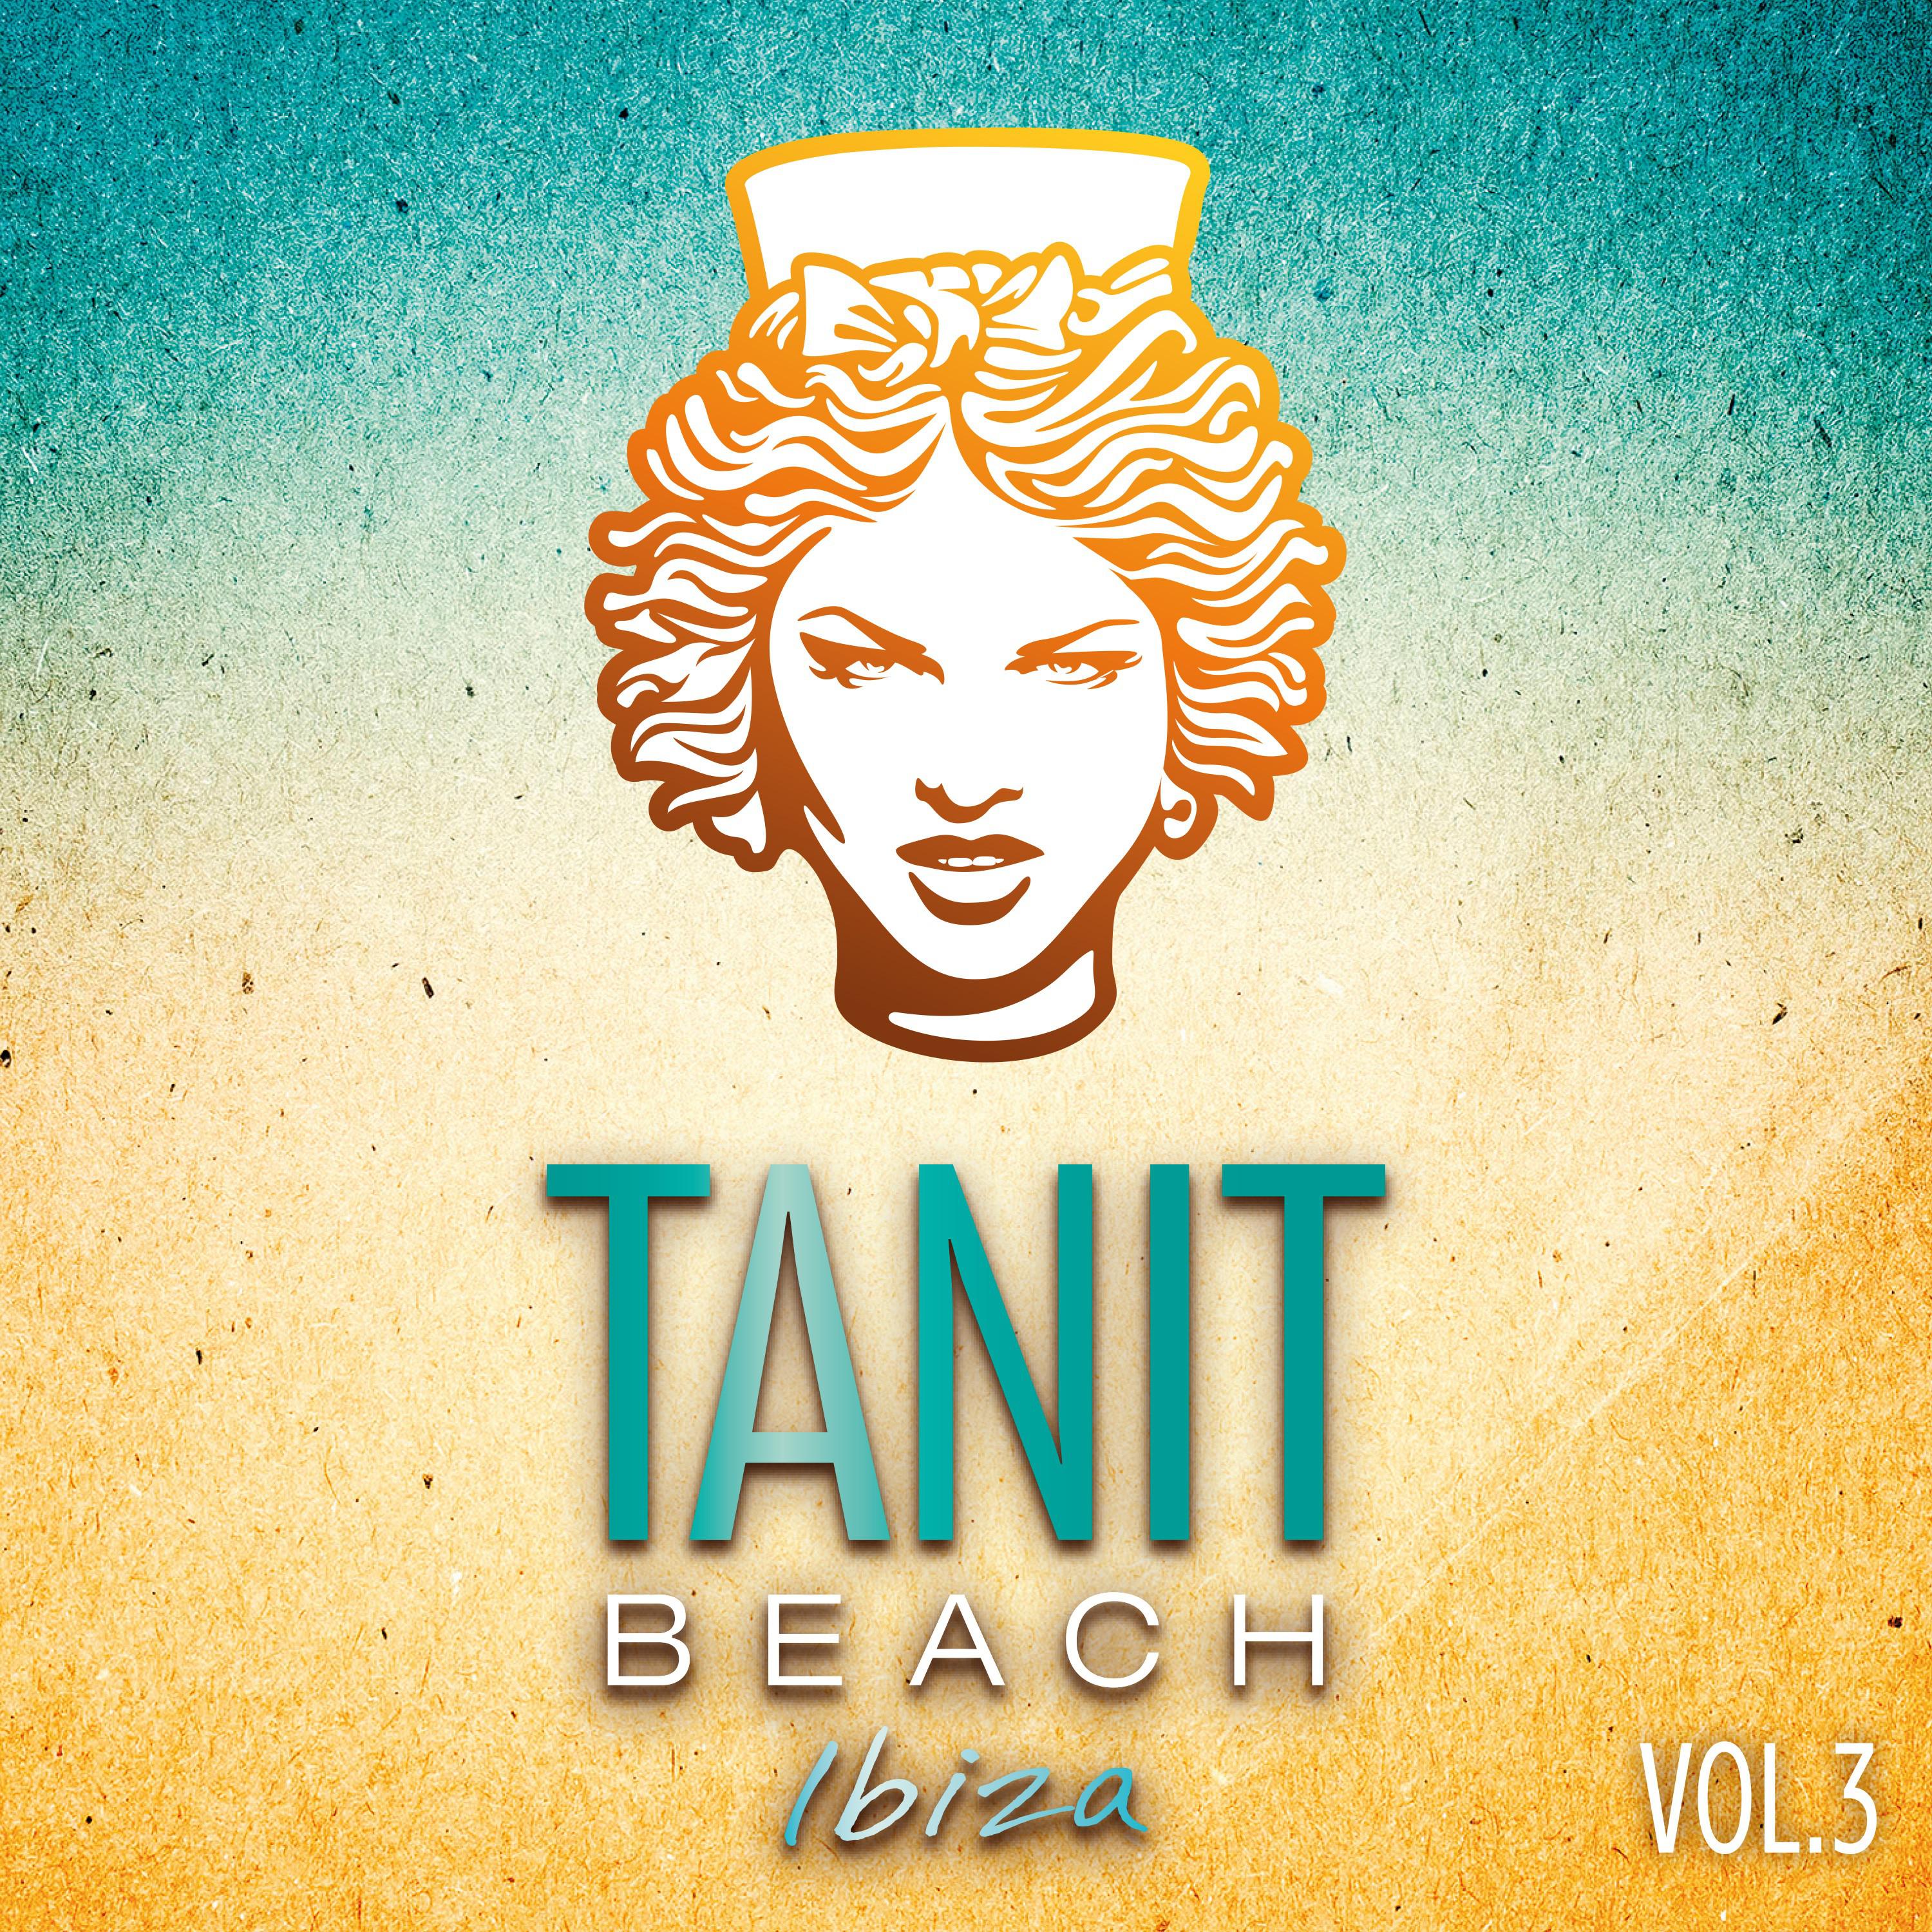 Tanit Beach Ibiza Vol. 3 Mix by DJ Ken Abel